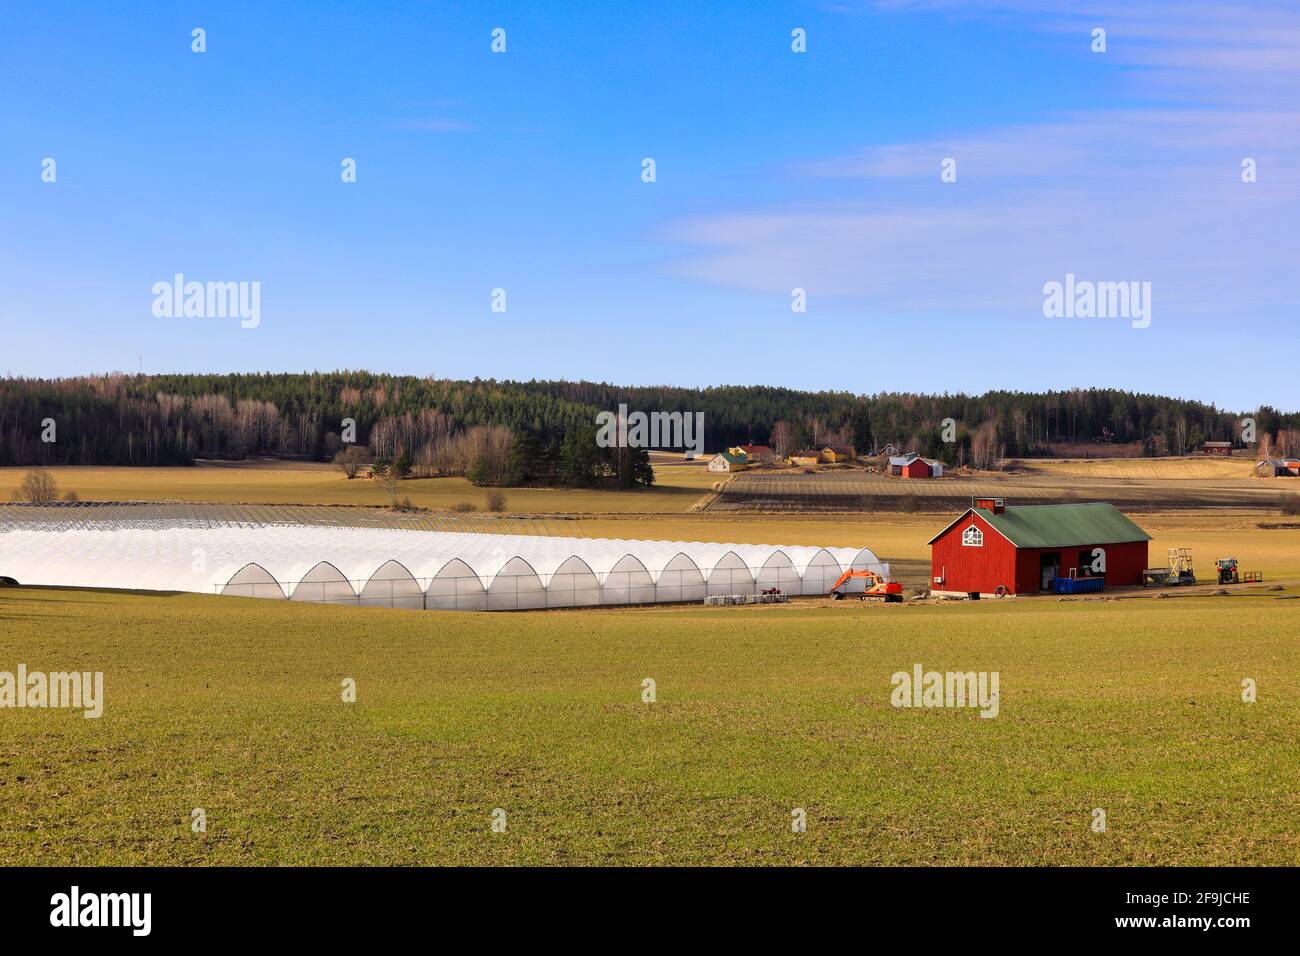 Landwirtschaftliche Landschaft von Gewächshäusern, Feld und roten Stützgebäude mit Maschinen unter blauem Himmel mit einigen Wolken. Sauvo, Finnland. 4. April 2021 Stockfoto